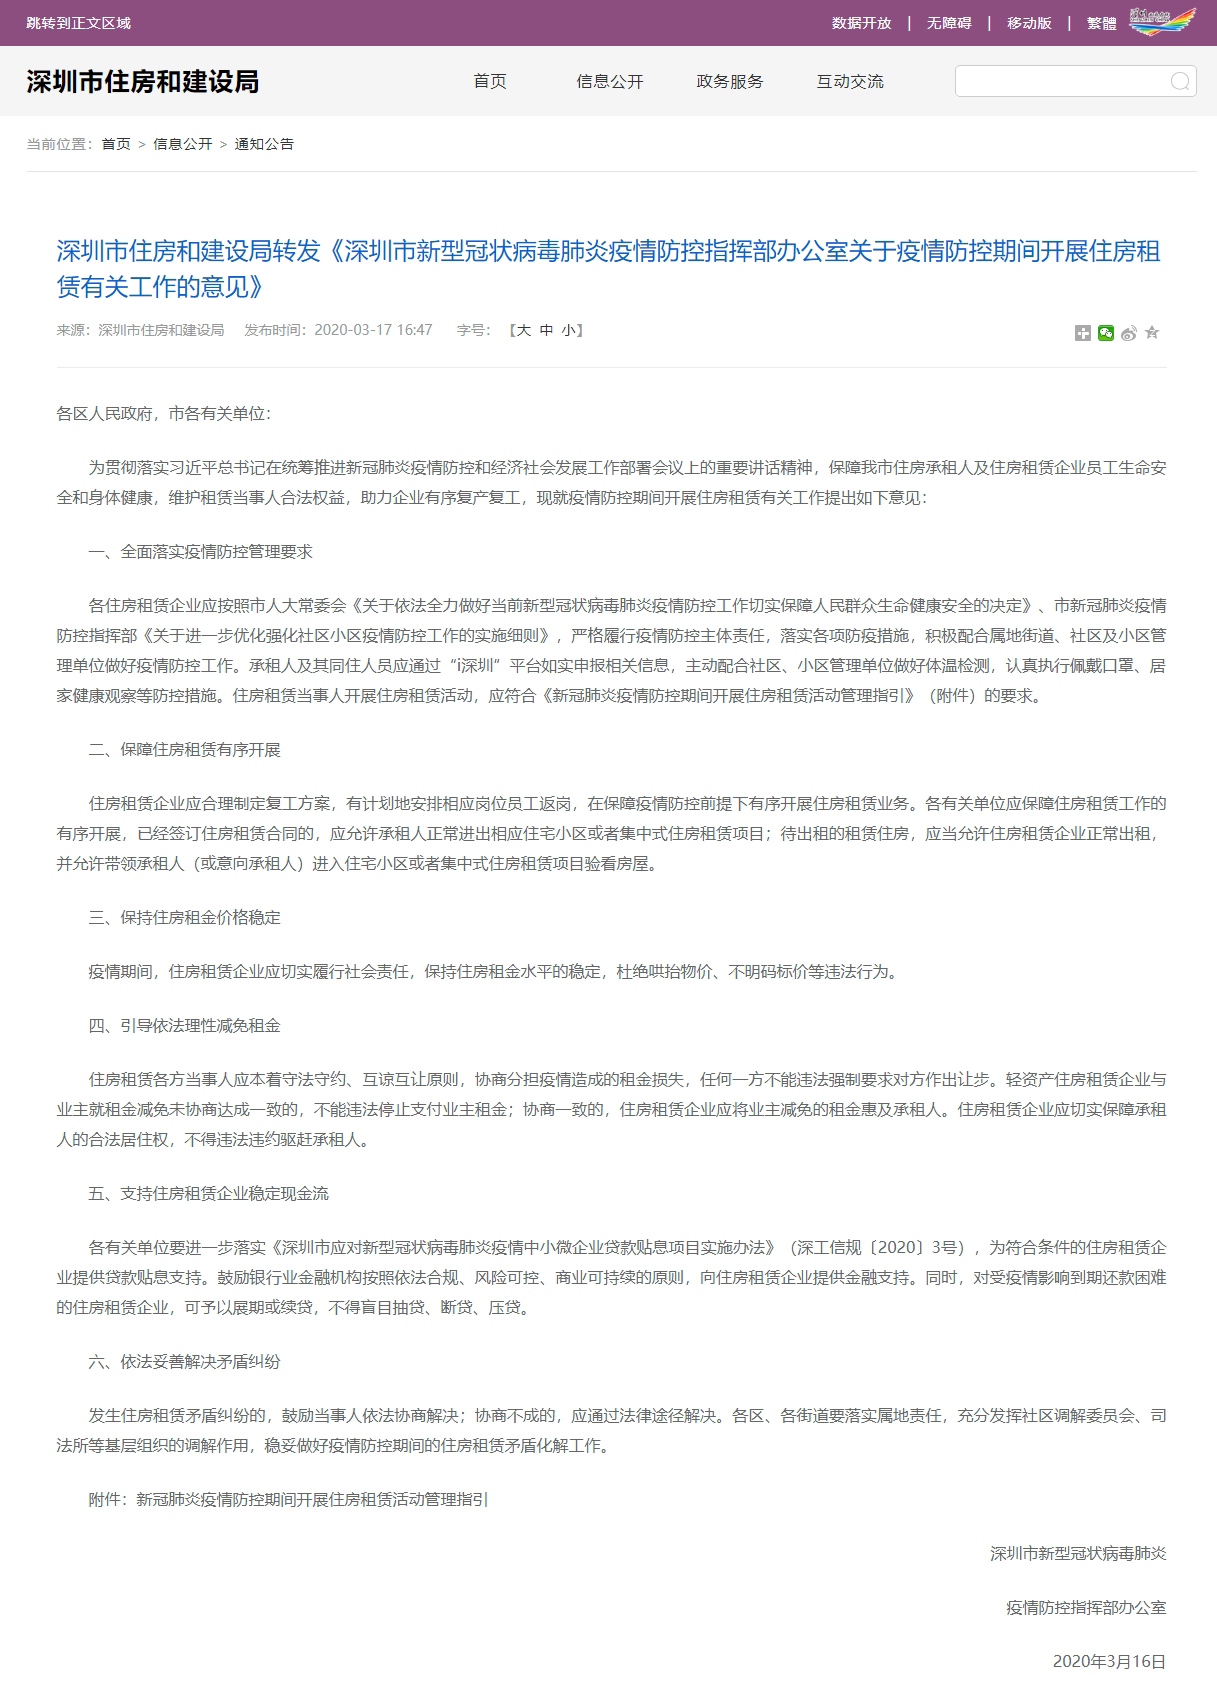 深圳：租赁企业与业主协商减免租金，不能违法停止付业主租金